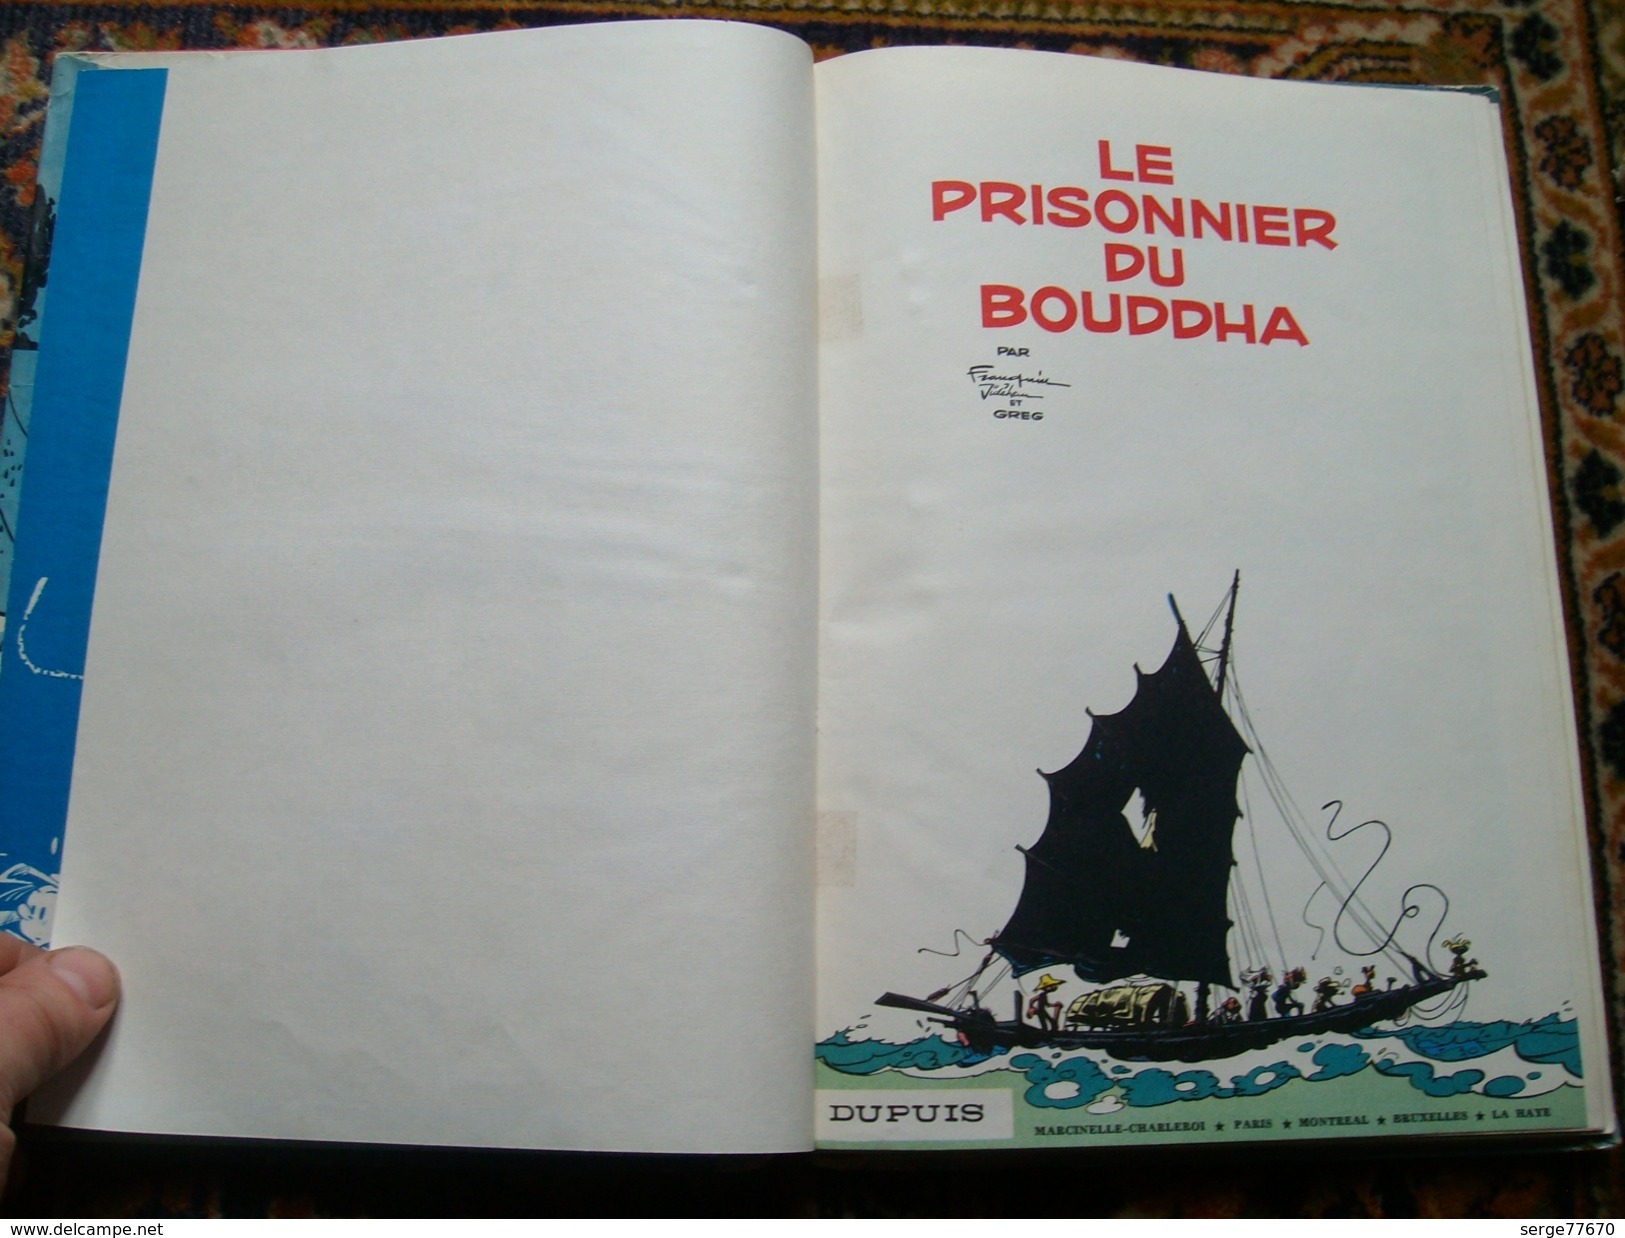 Spirou et Fantasio Franquin Le prisonnier du Bouddha 1960 édition originale eo Dupuis